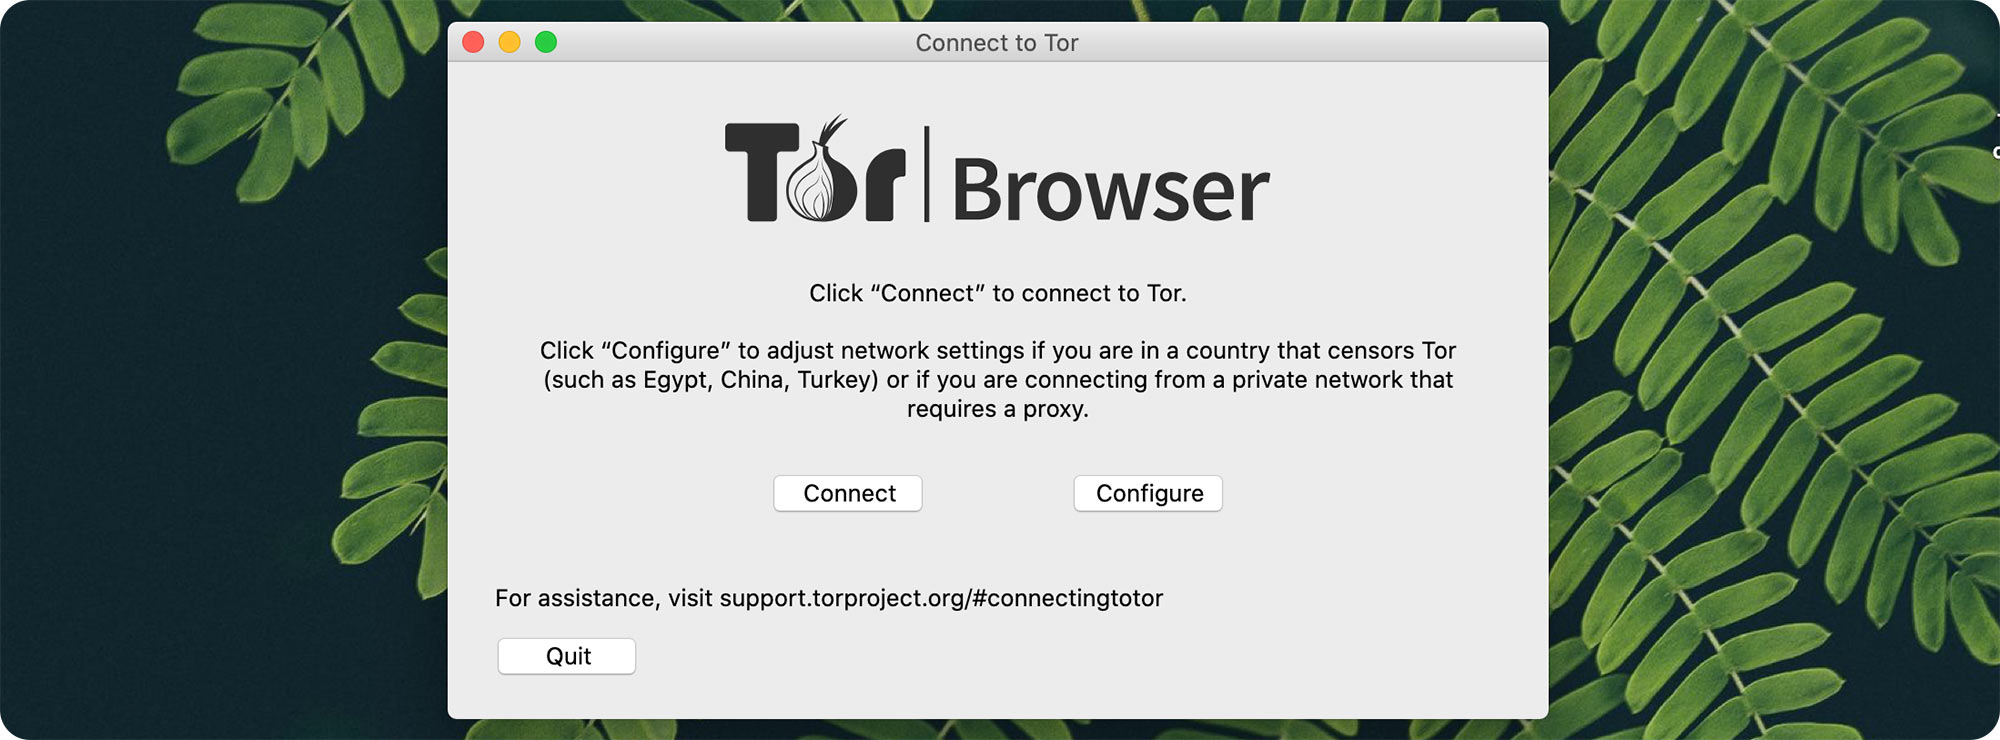 Start tor browser для mac гидра торренты и тор браузер гидра